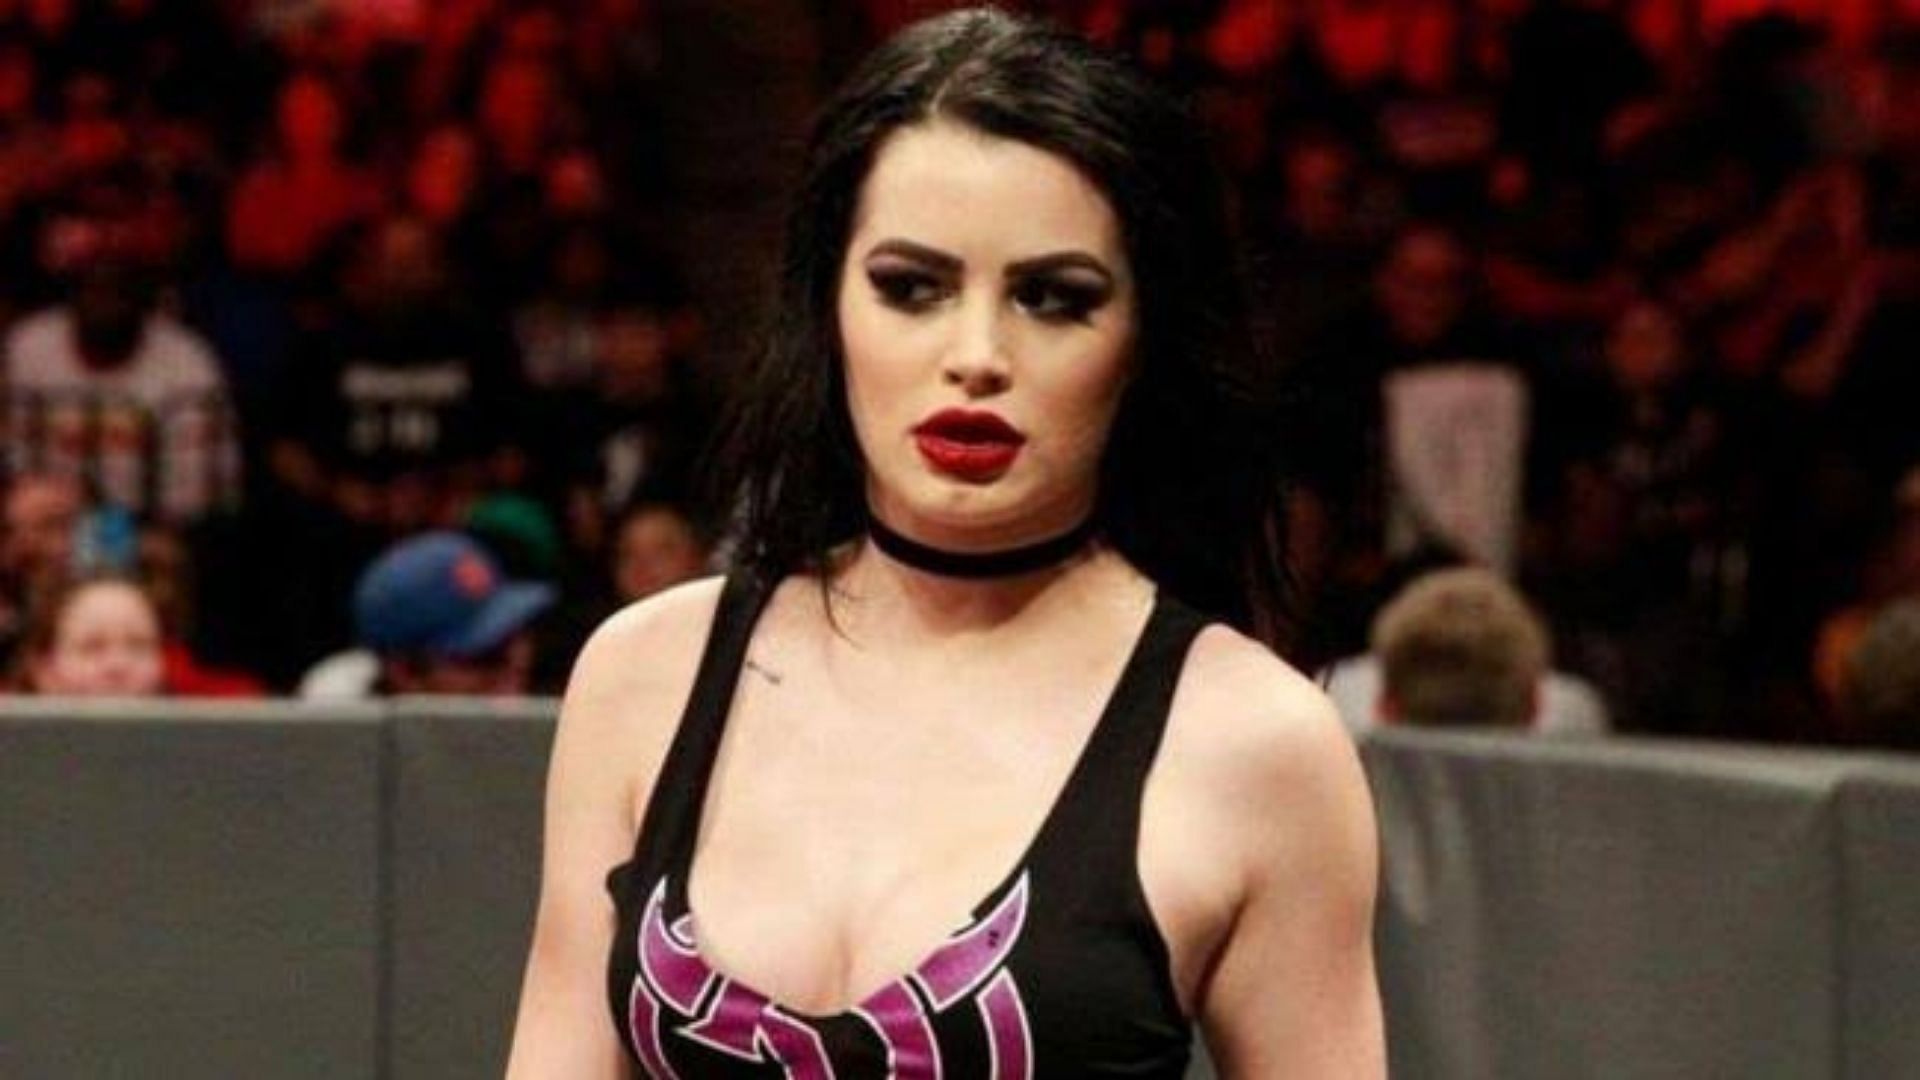 Saraya (fka Paige) is a former WWE Diva